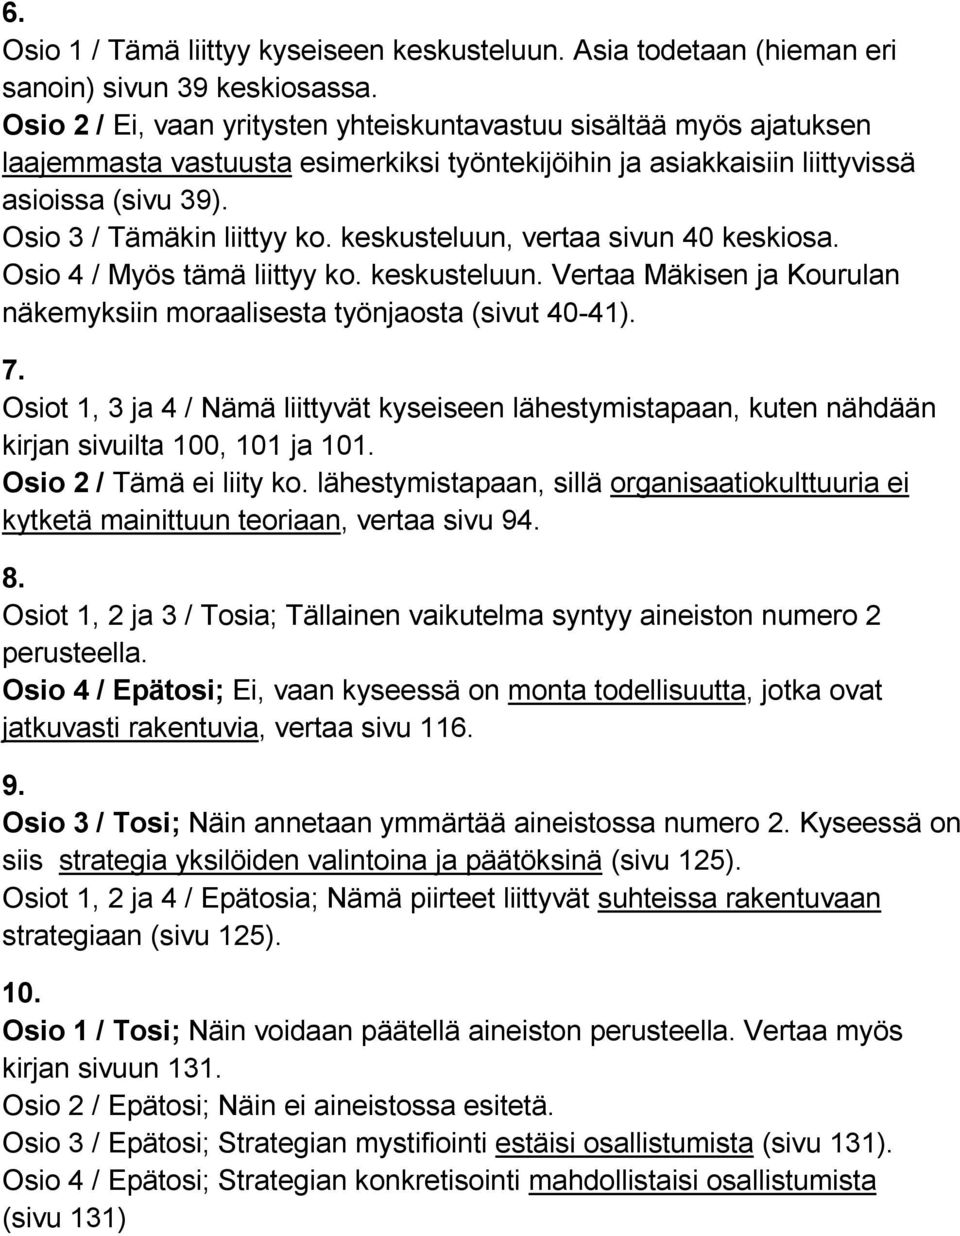 keskusteluun, vertaa sivun 40 keskiosa. Osio 4 / Myös tämä liittyy ko. keskusteluun. Vertaa Mäkisen ja Kourulan näkemyksiin moraalisesta työnjaosta (sivut 40-41). 7.